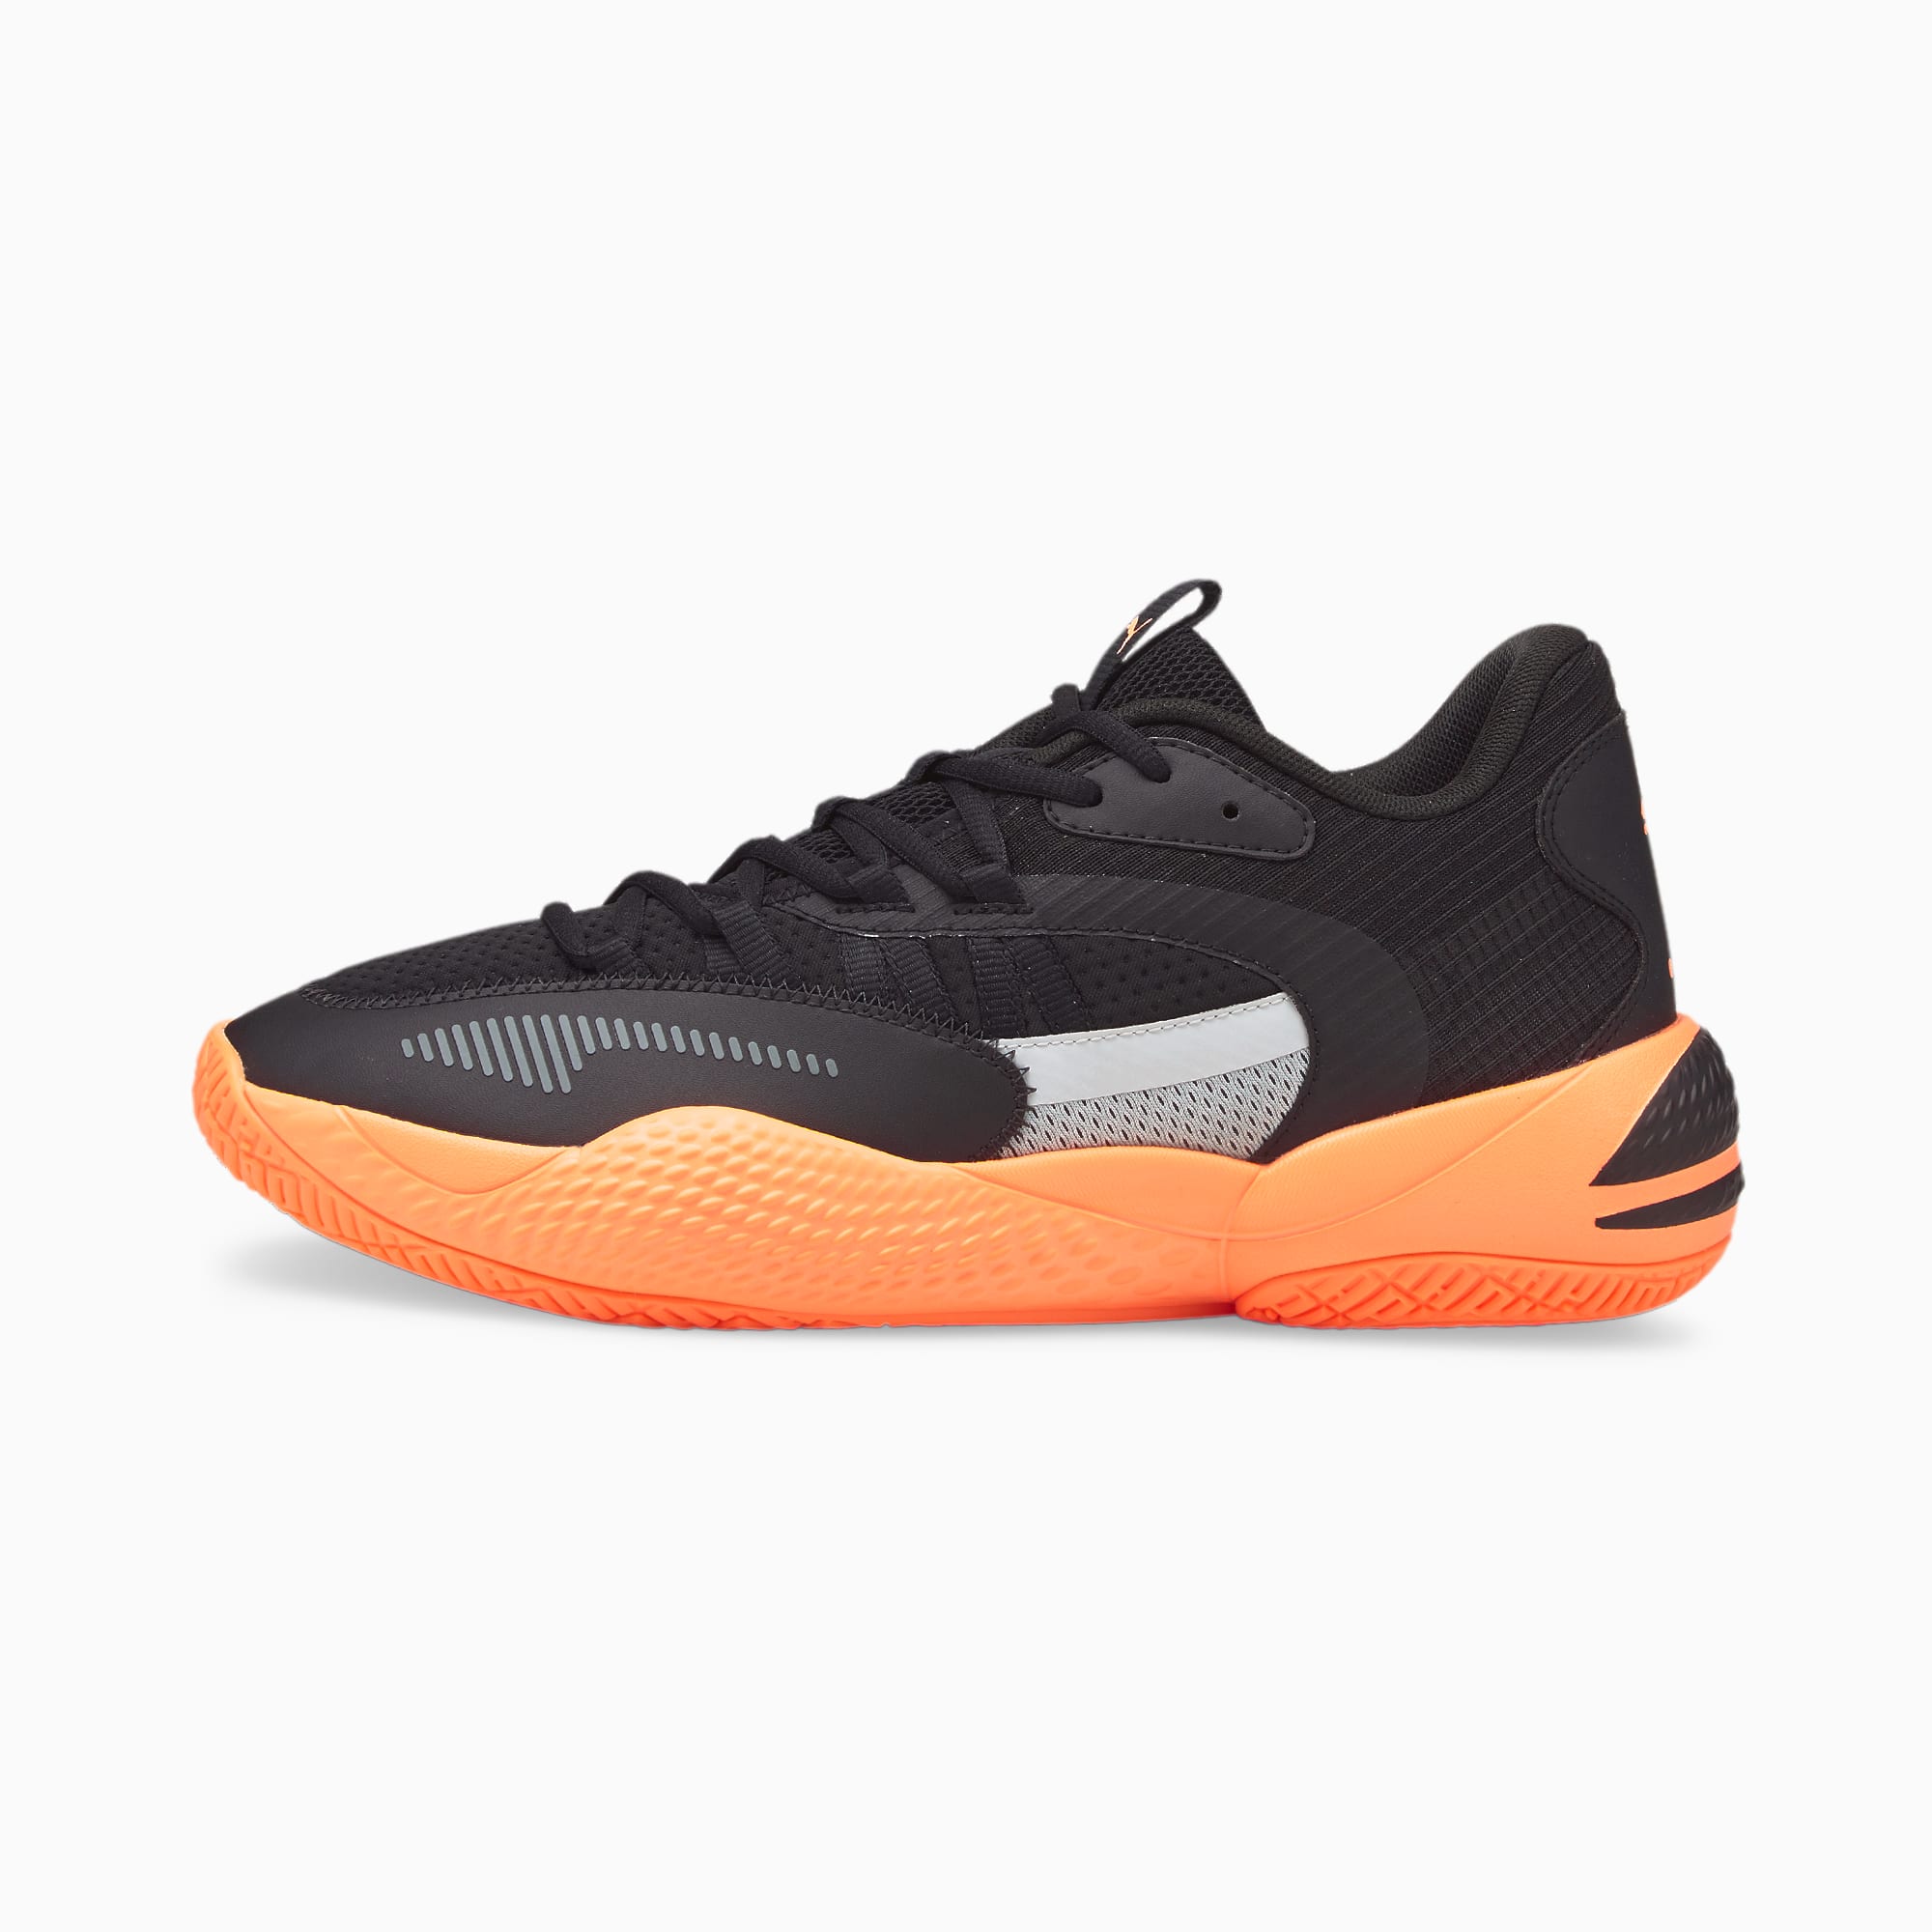 Court Rider 2.0 Basketball Shoes Puma Black-Neon Citrus PUMA Shop All  Puma PUMA